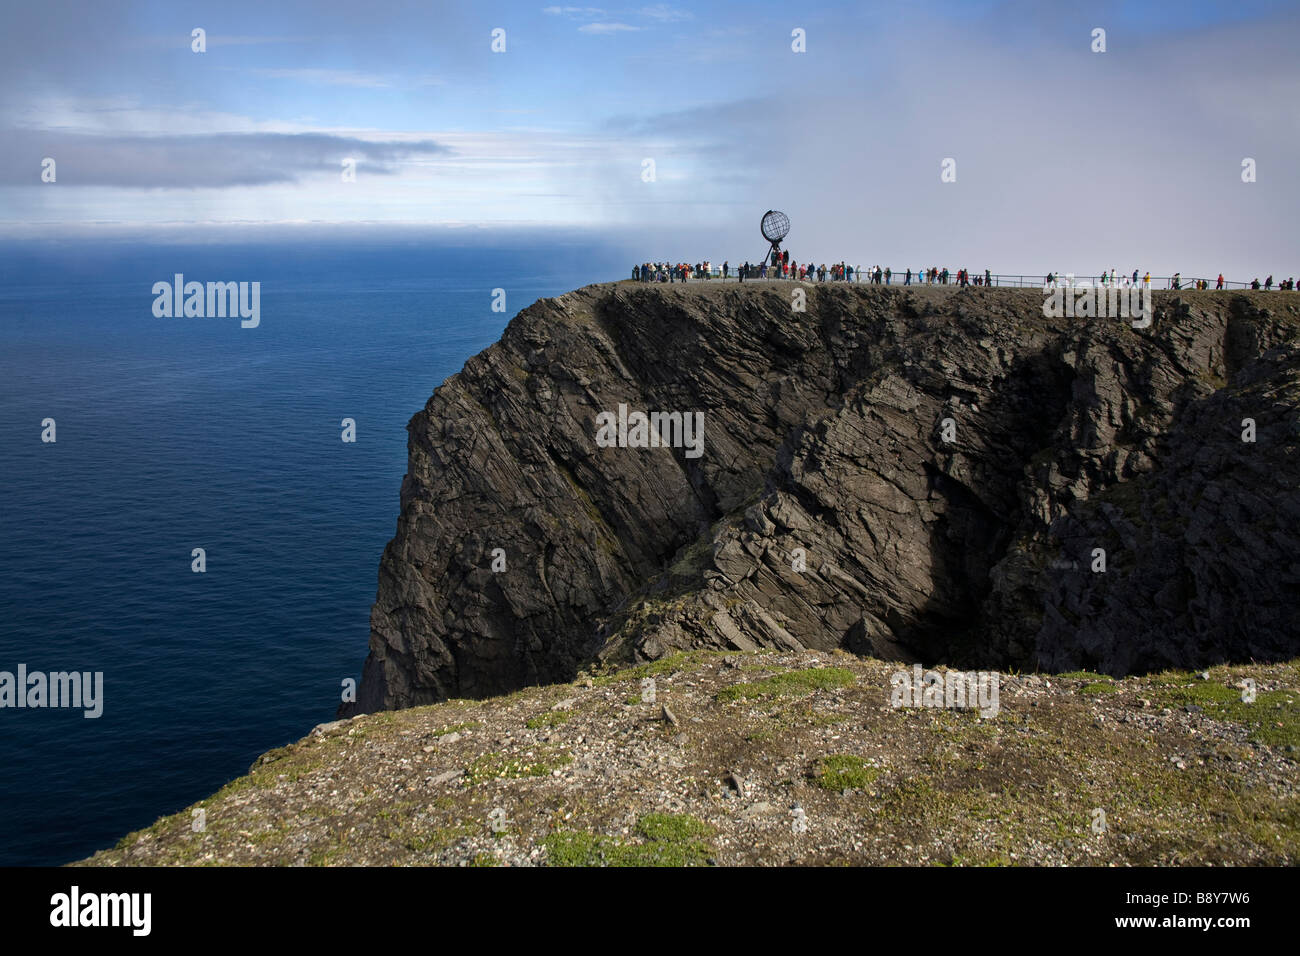 Les touristes et une sculpture sur une falaise, Honningsvag Honningsvag, Port, l'île de Mageroya, Nordkapp, comté de Finnmark, Norvège Banque D'Images